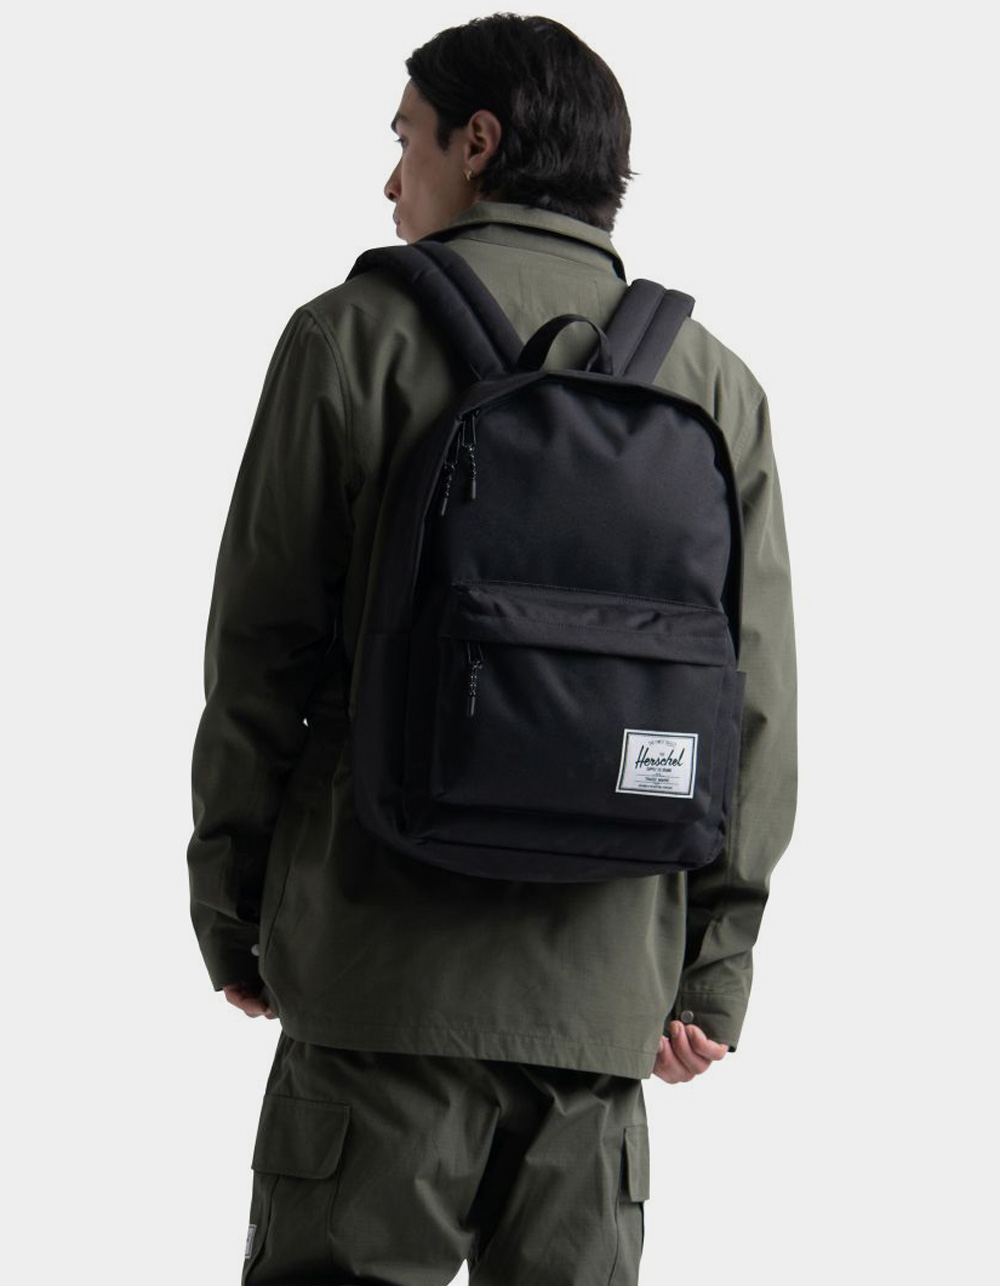 HERSCHEL SUPPLY CO. Classic XL Backpack - GREEN | Tillys